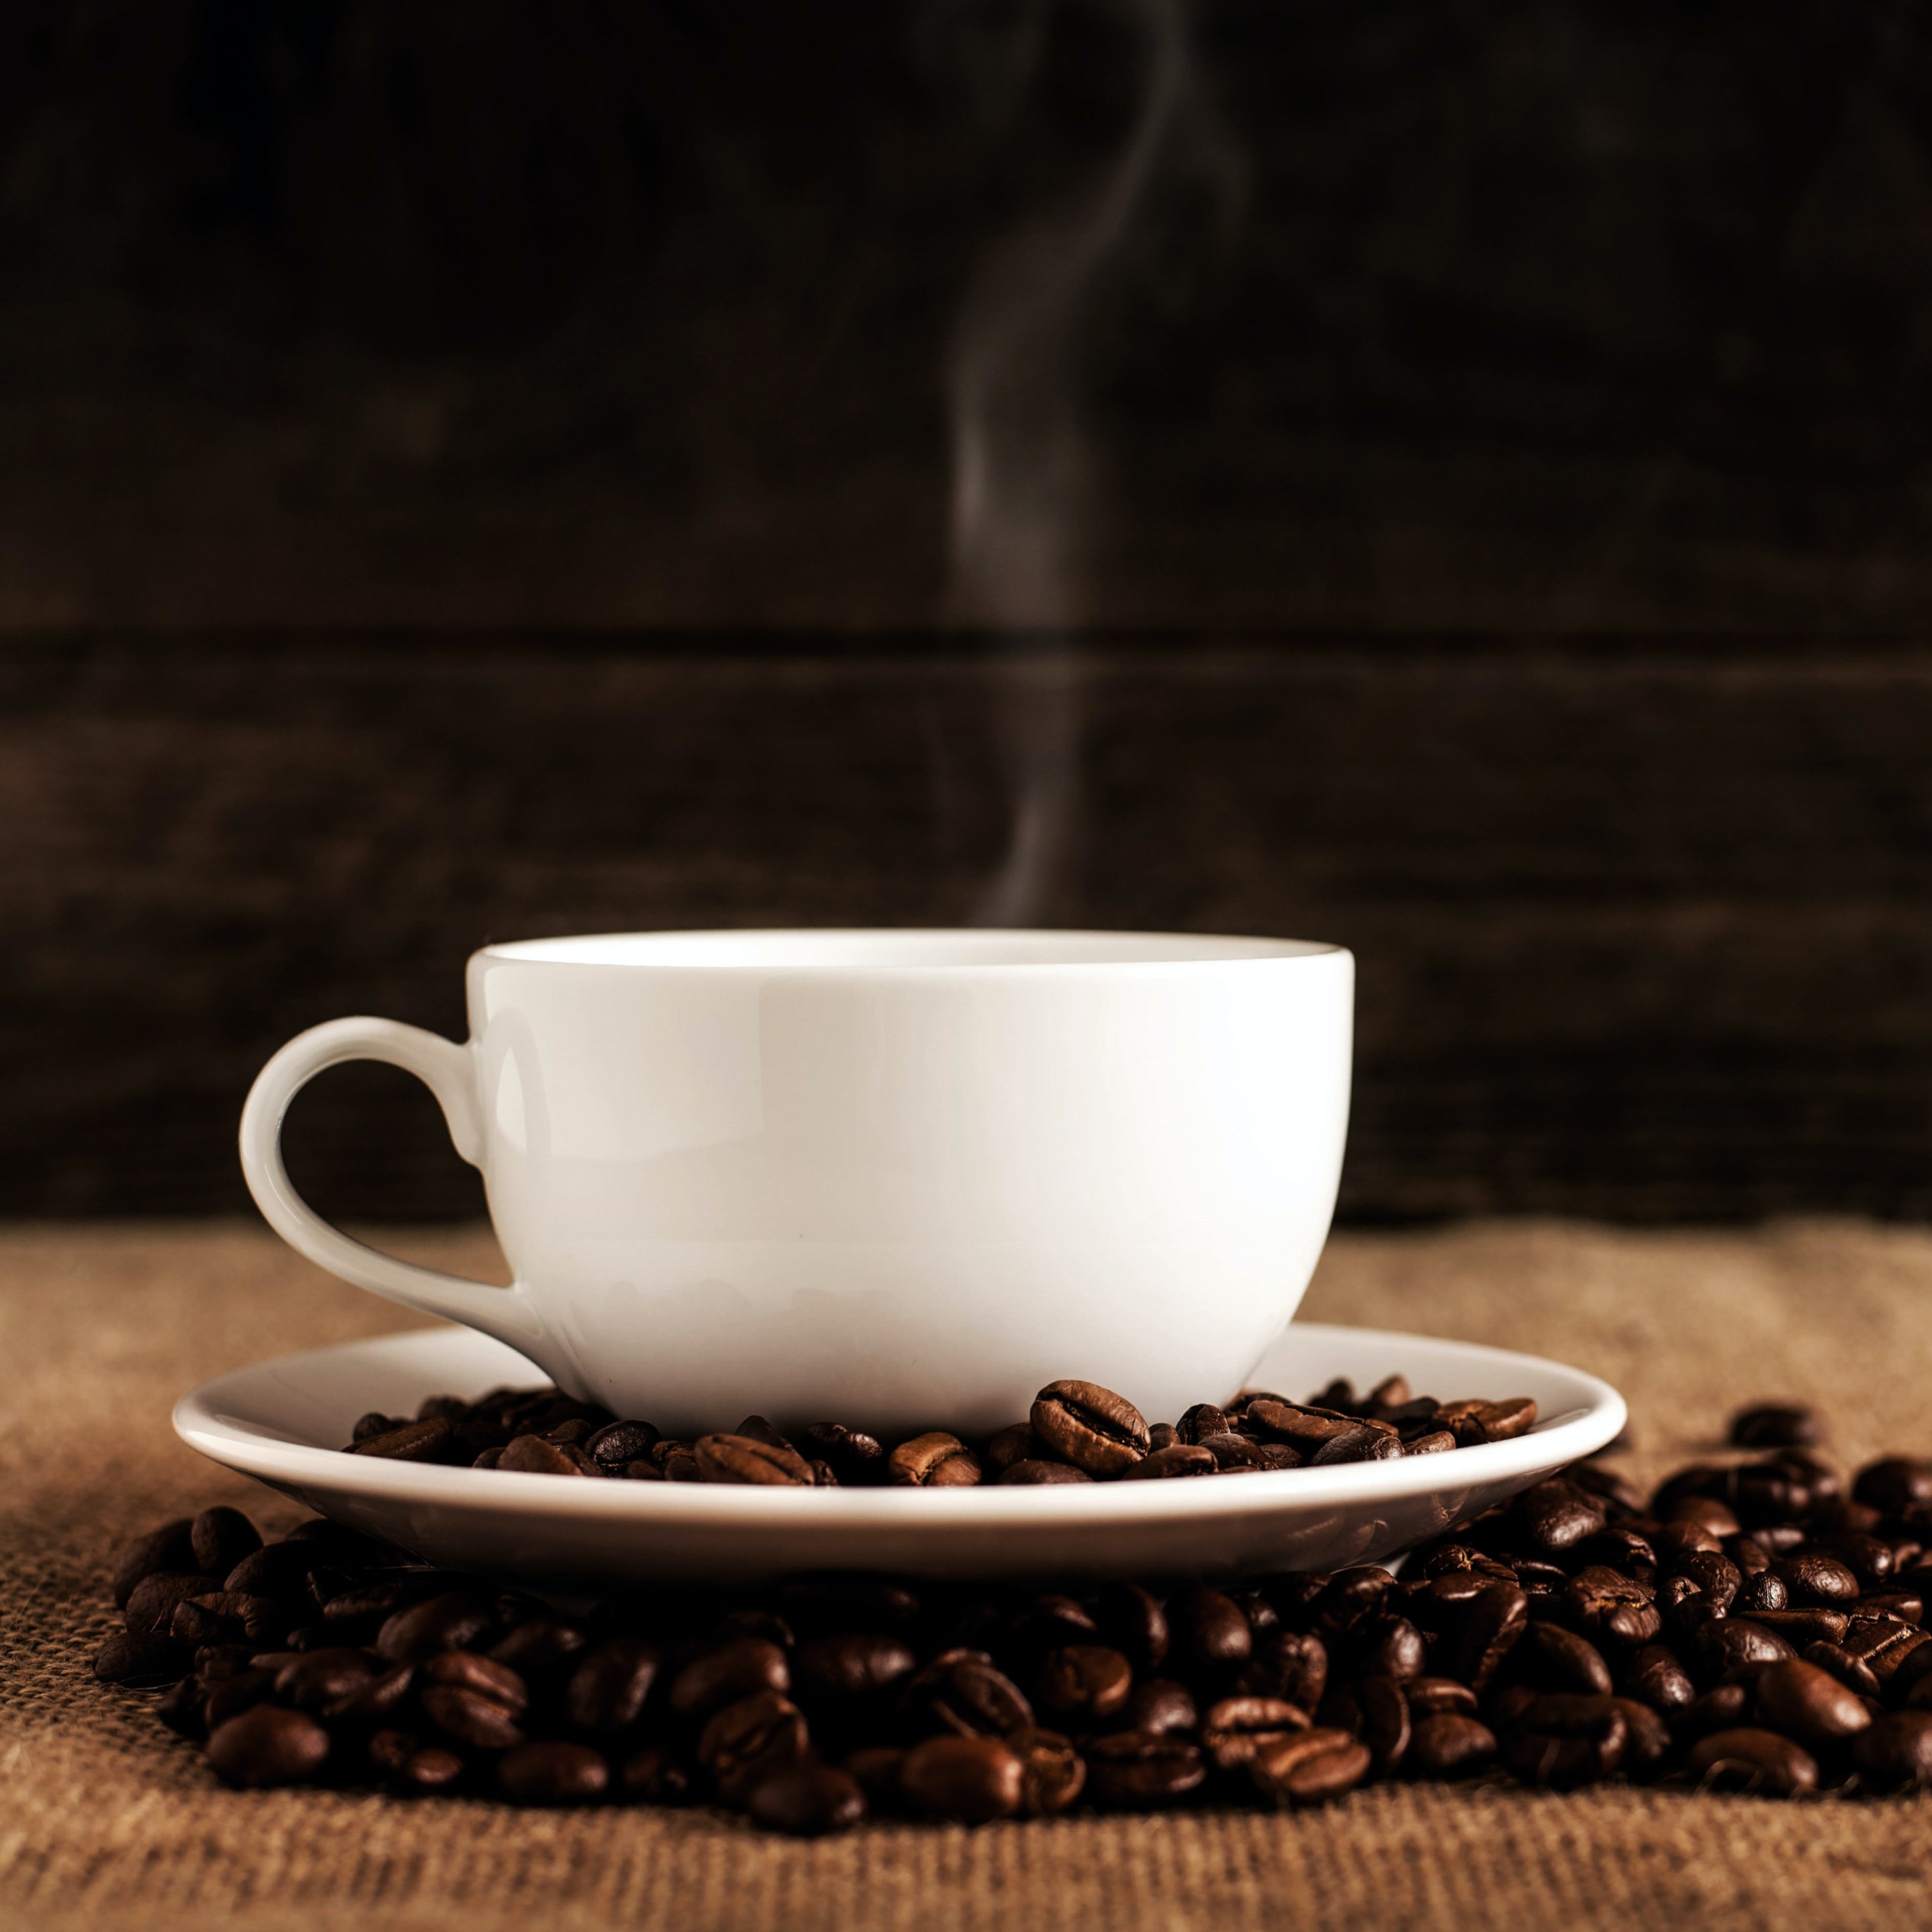 Toma café sin sentir culpa: no aumenta el riesgo de ninguna enfermedad